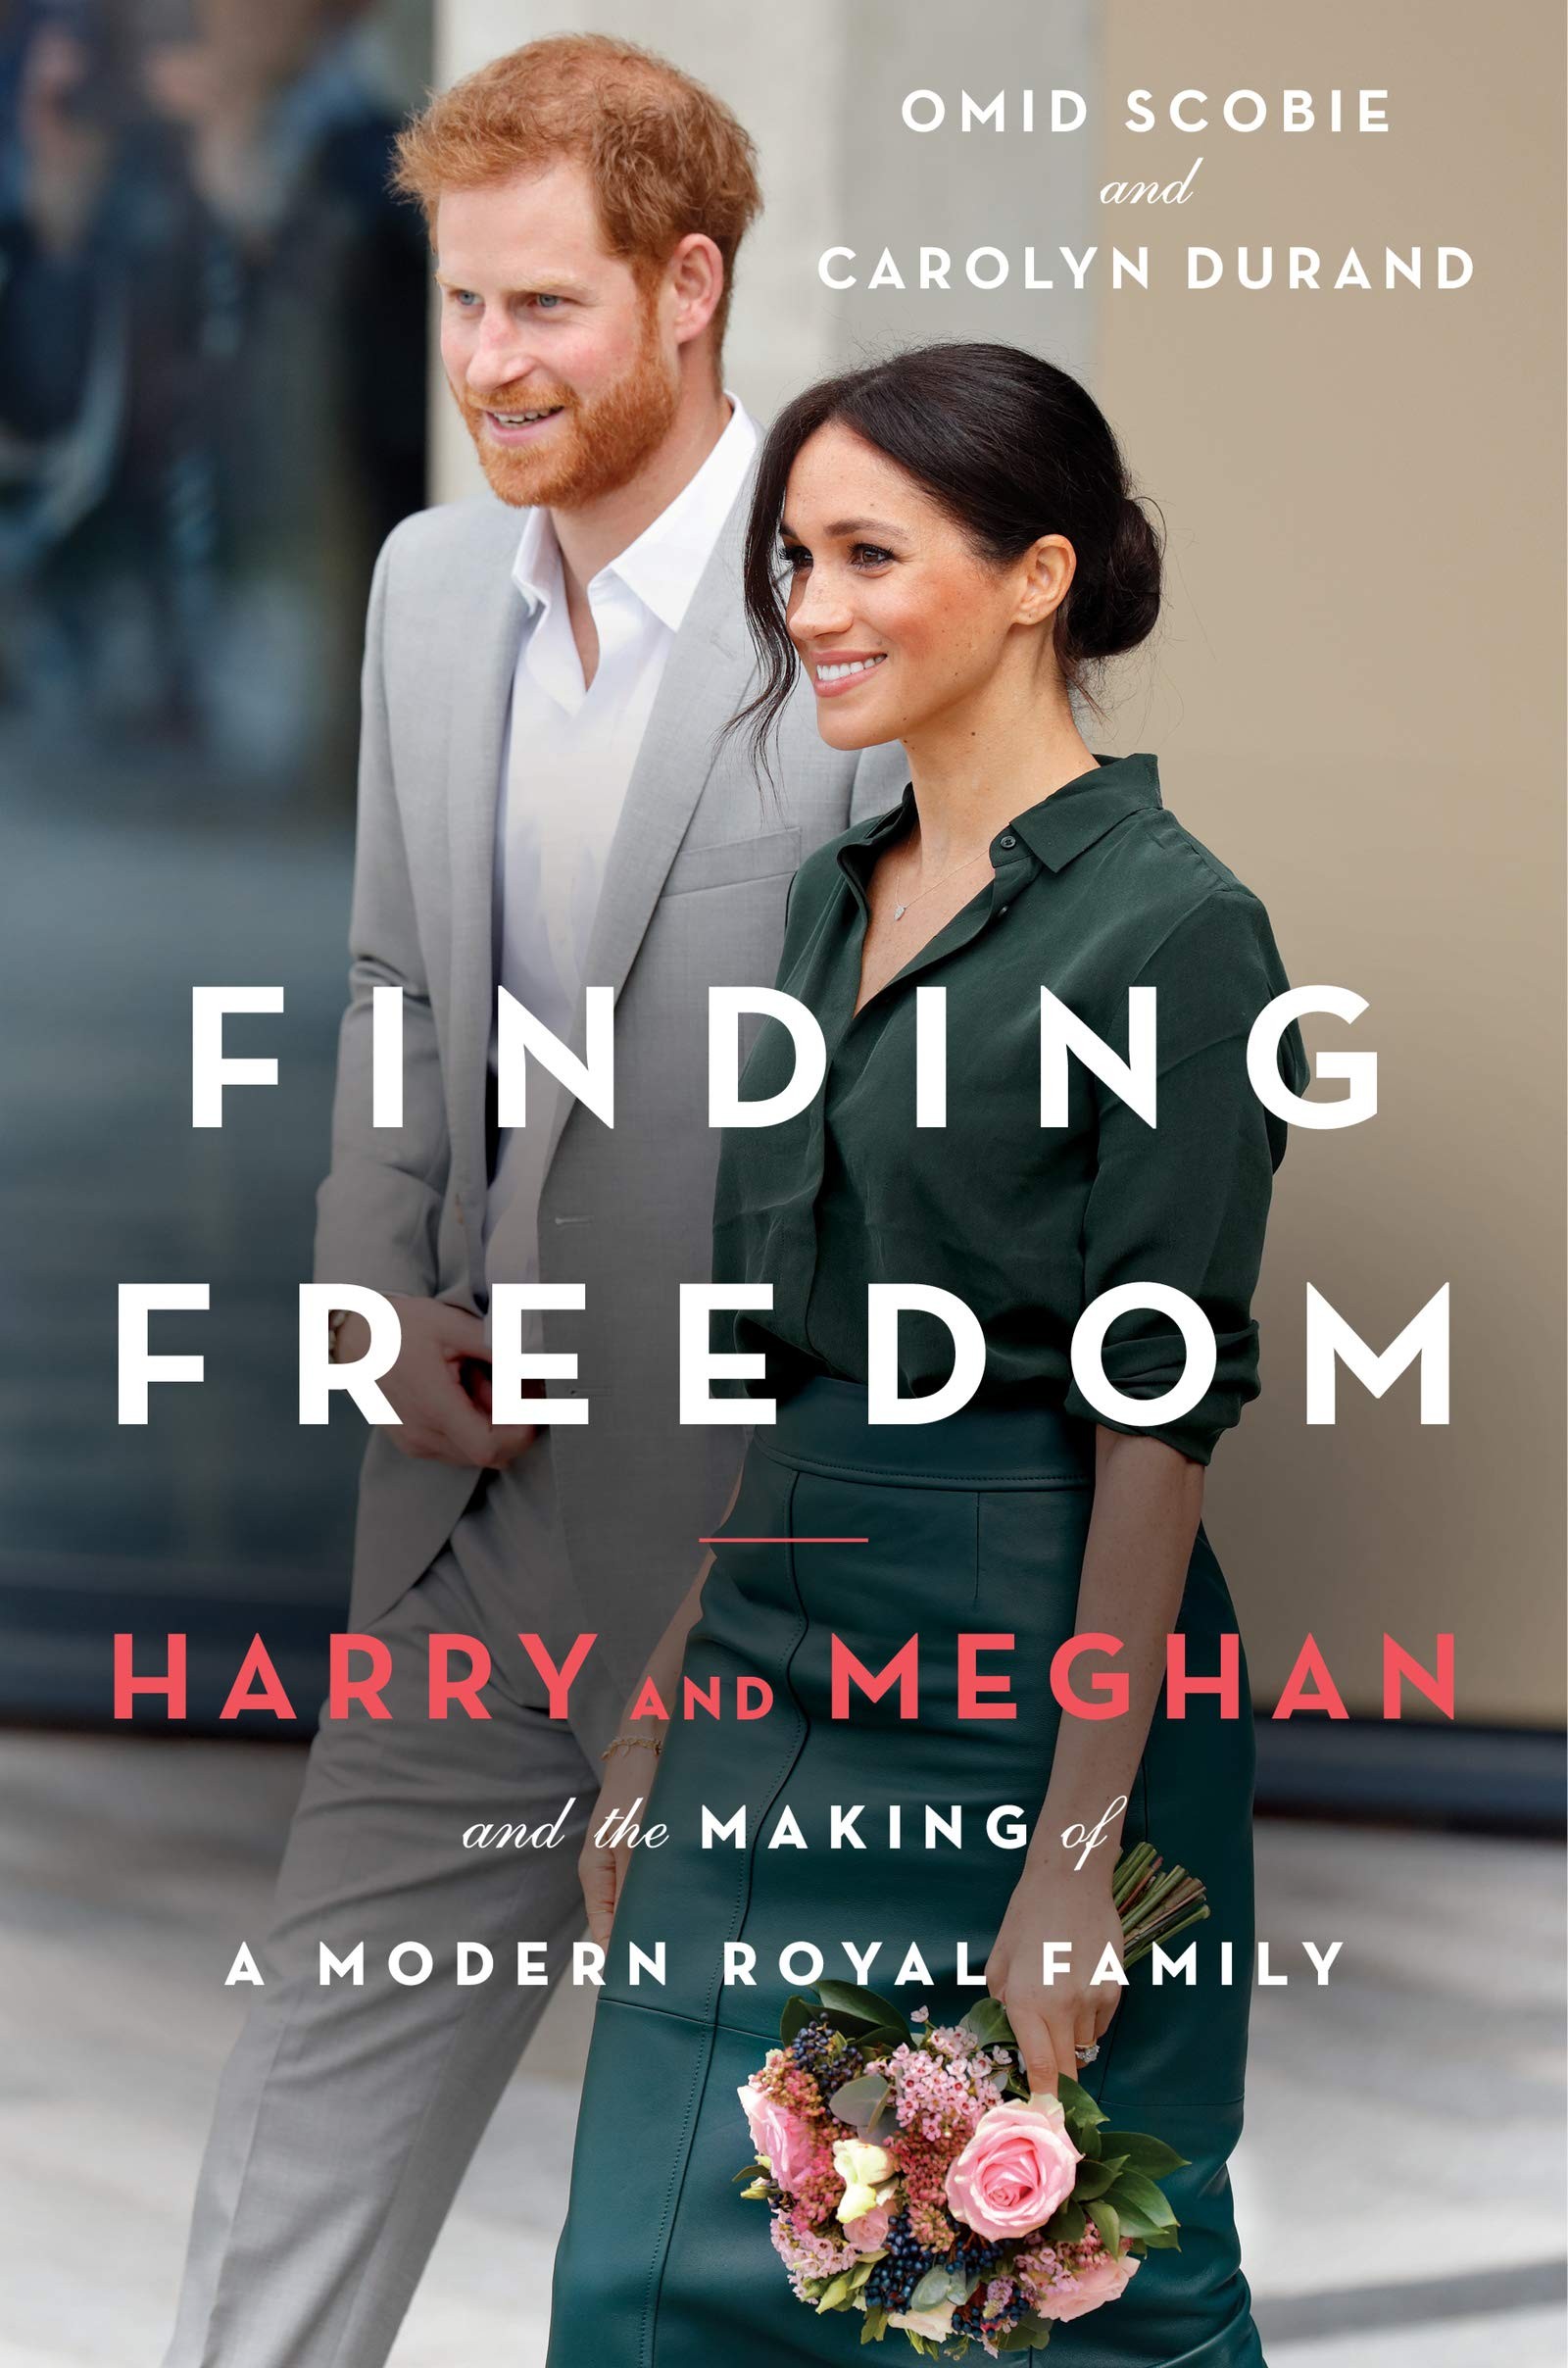 A capa de Finding Freedom, livro com relatos sobre as tensões entre o casal composto pelo Príncipe Harry e a atriz Meghan Markle com os demais membros da Família Real Britânica (Foto: Divulgação)